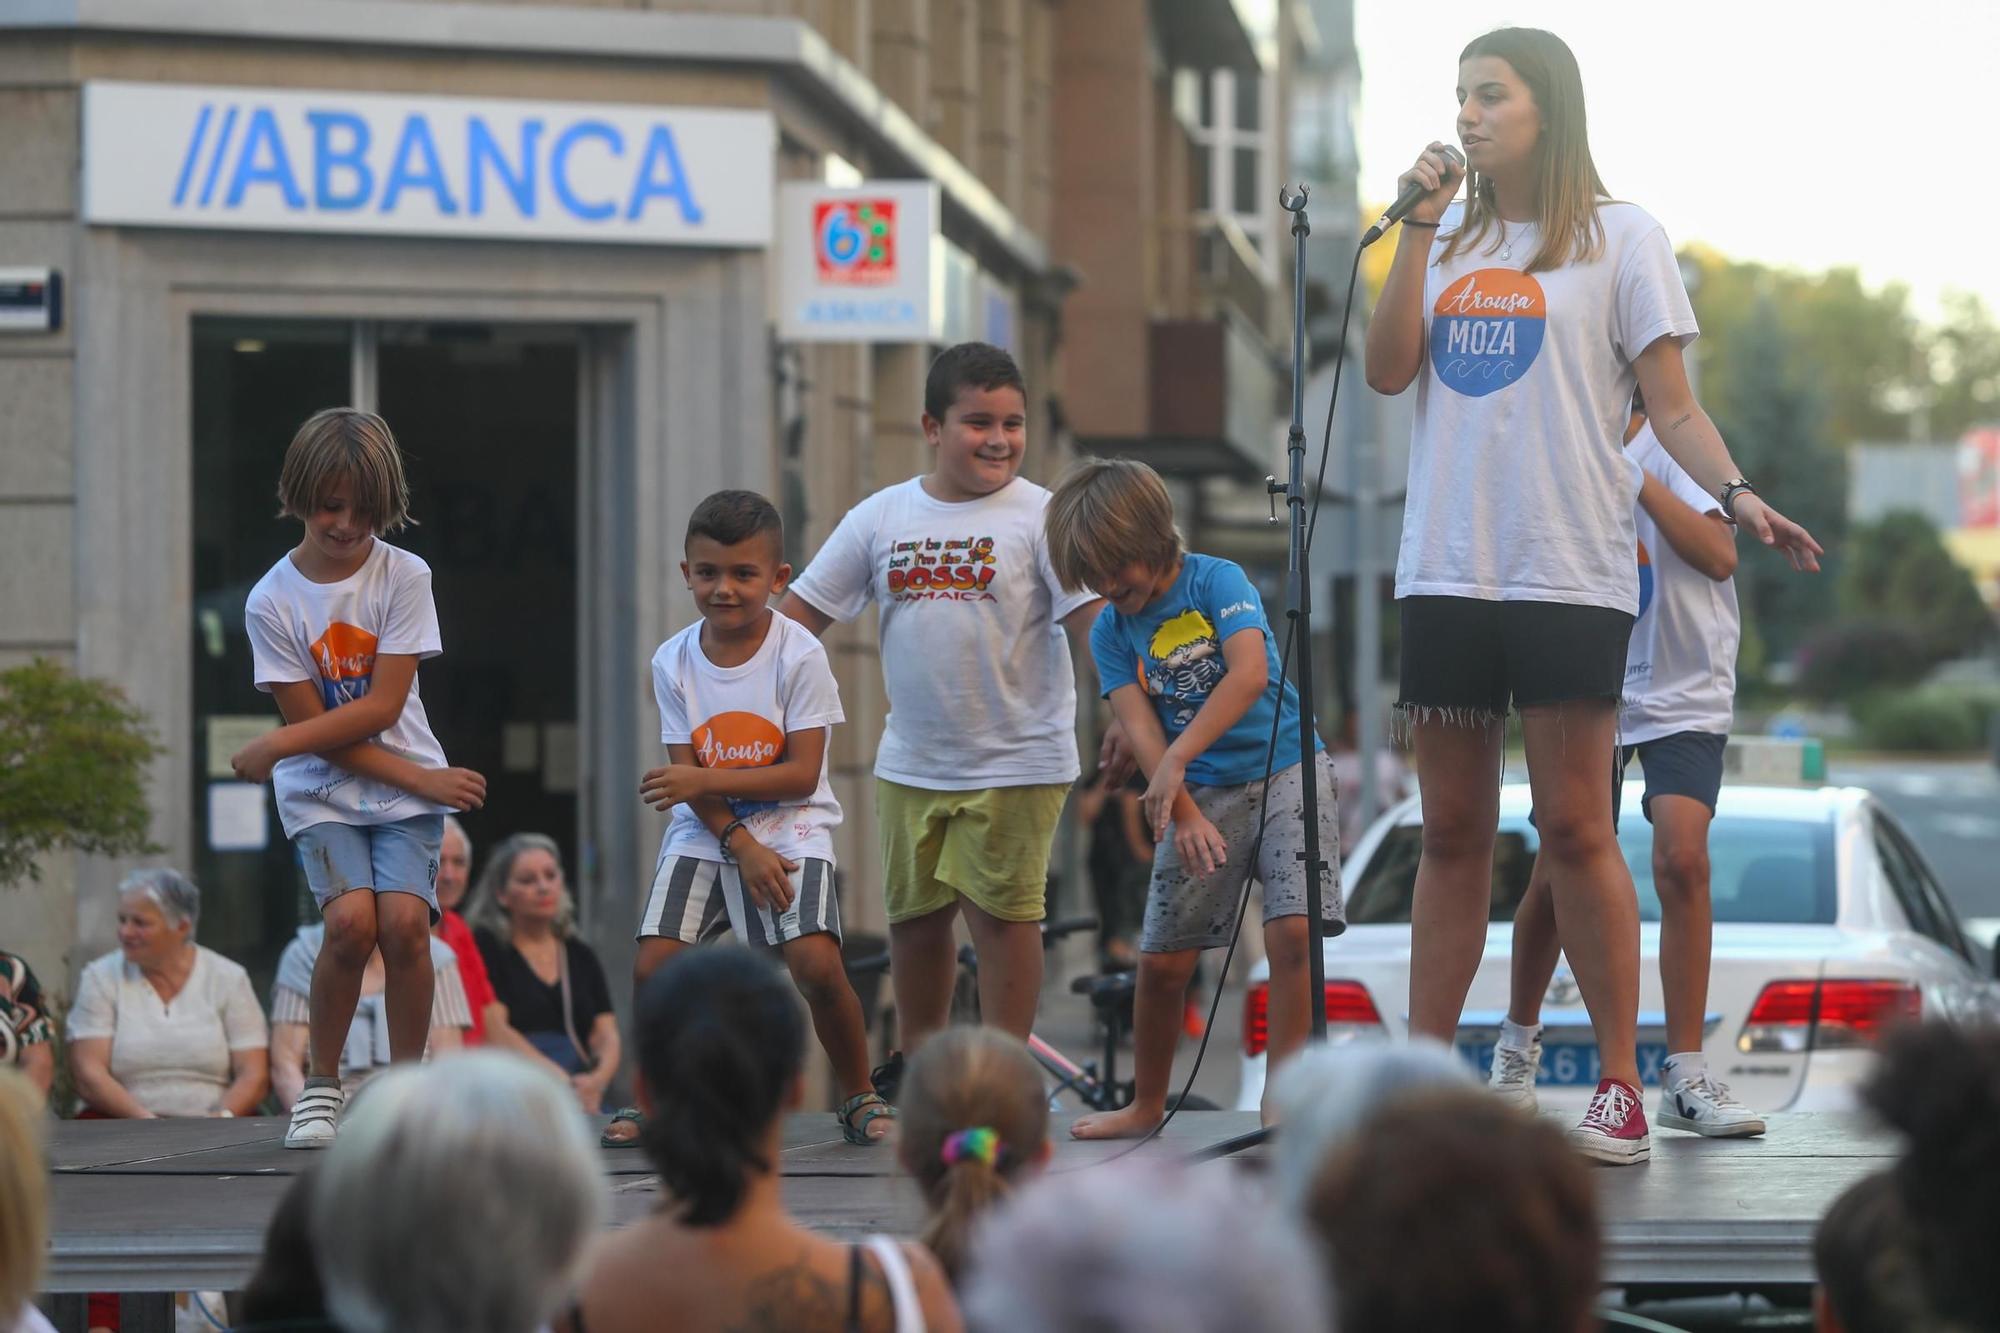 Mozos de Arousa, protagonistas en Vilagarcía